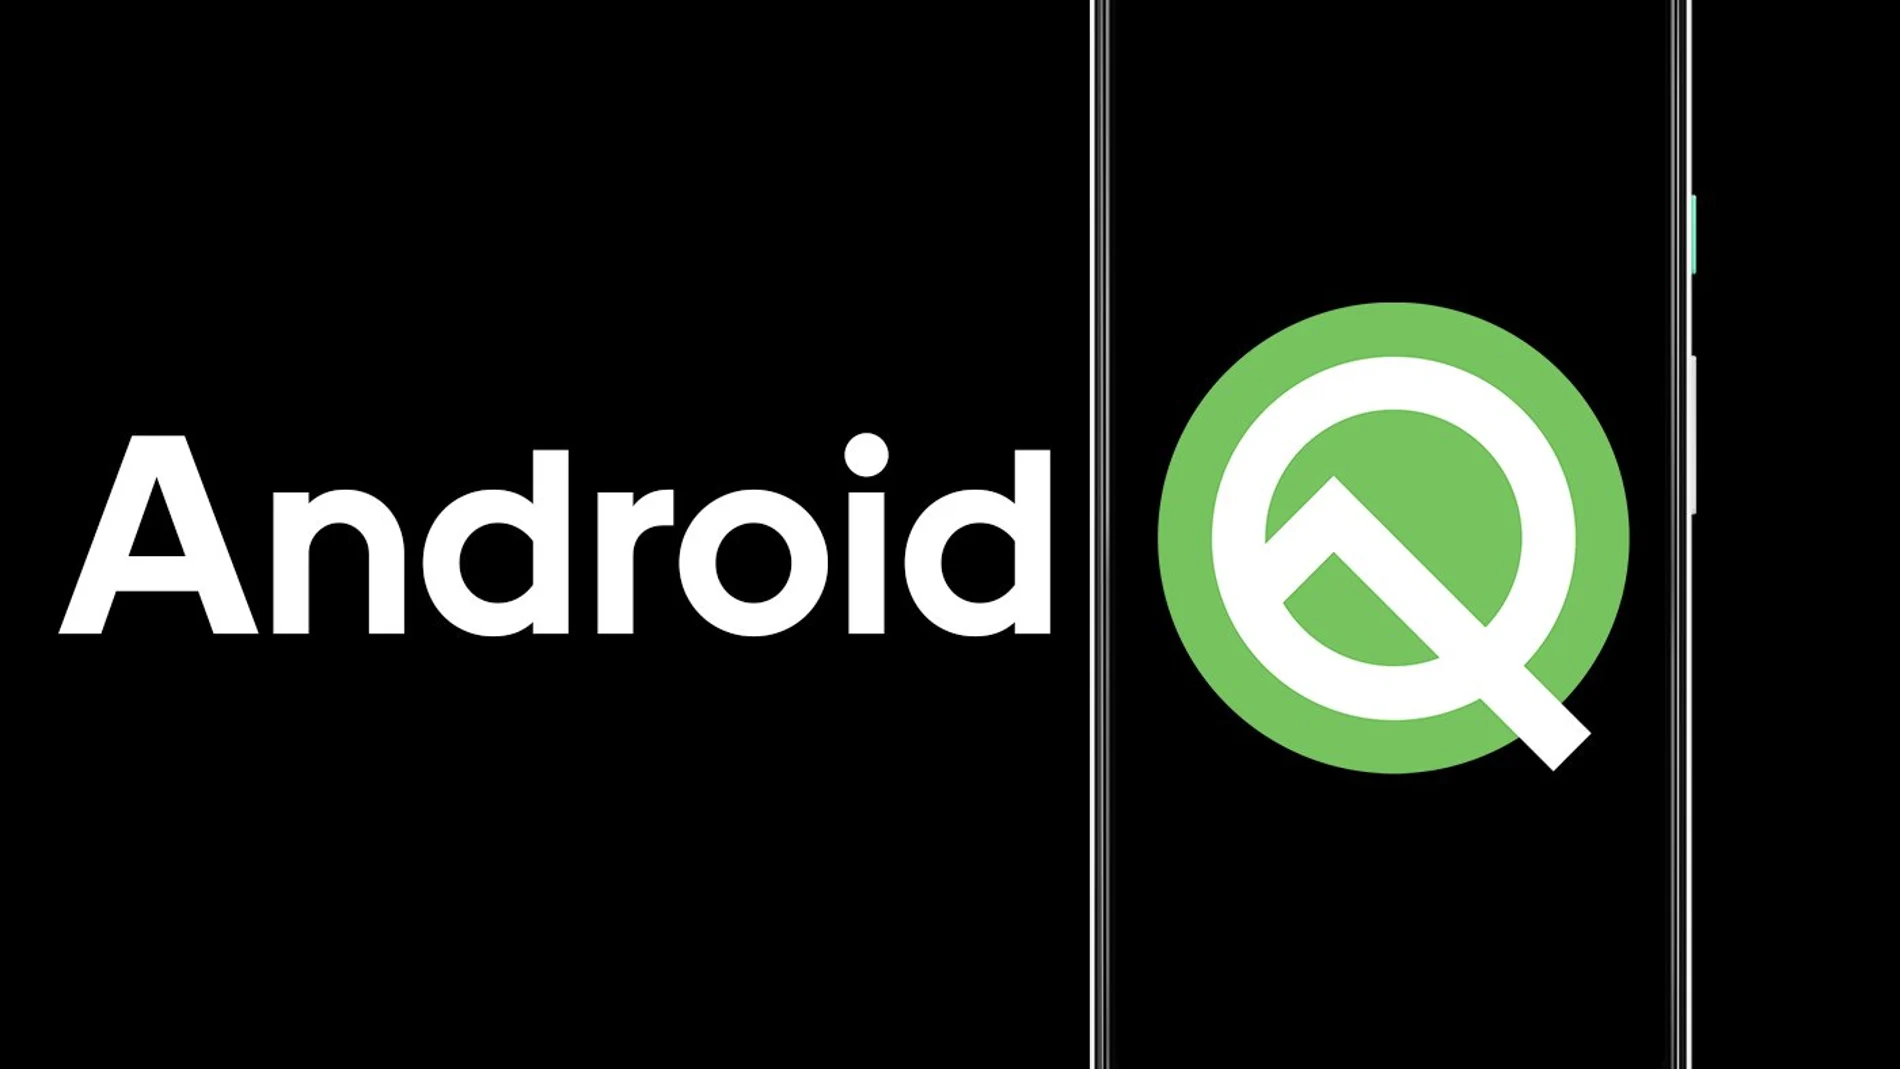 Android Q, nuevo sistema operativo impulsado por Google